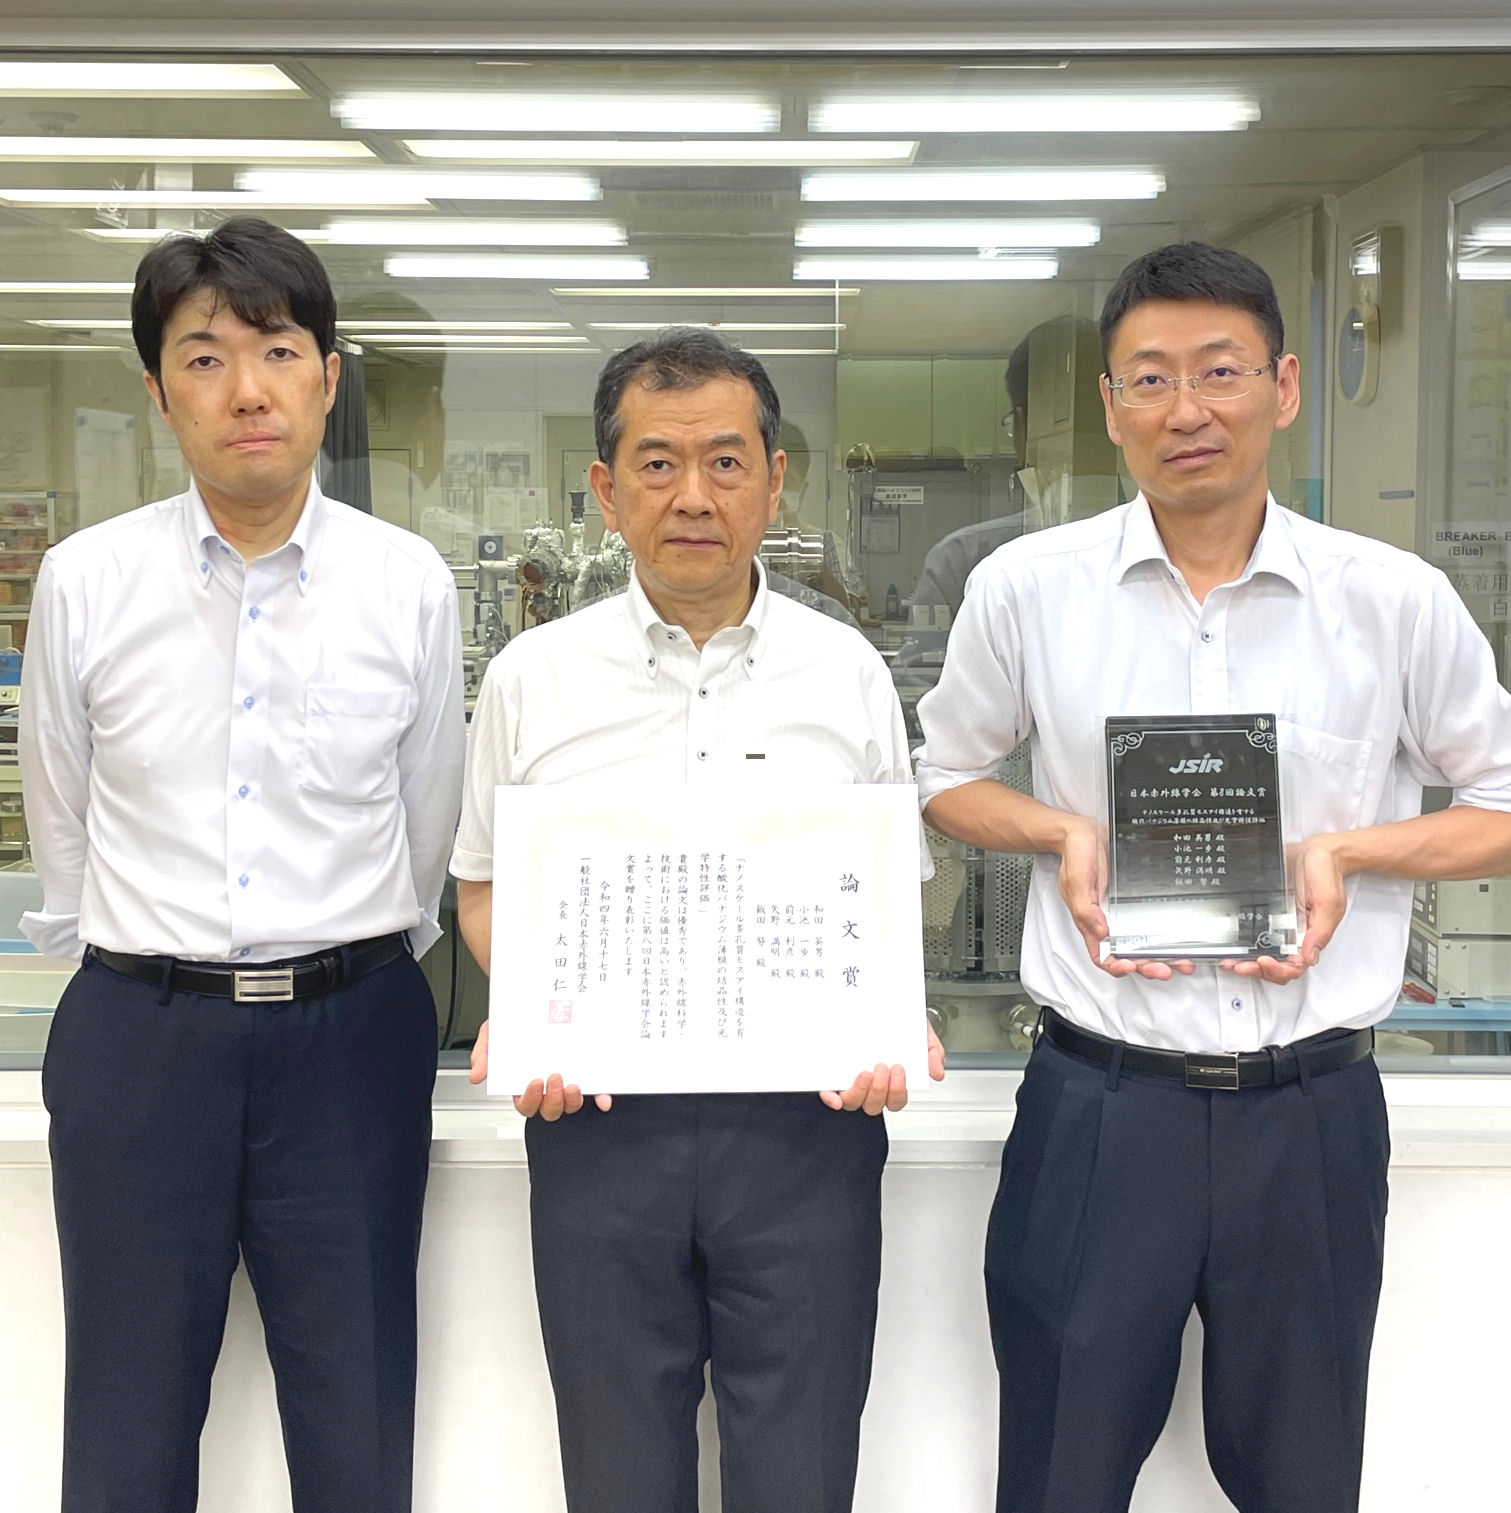 受賞者、左から前元先生、和田先生、小池先生